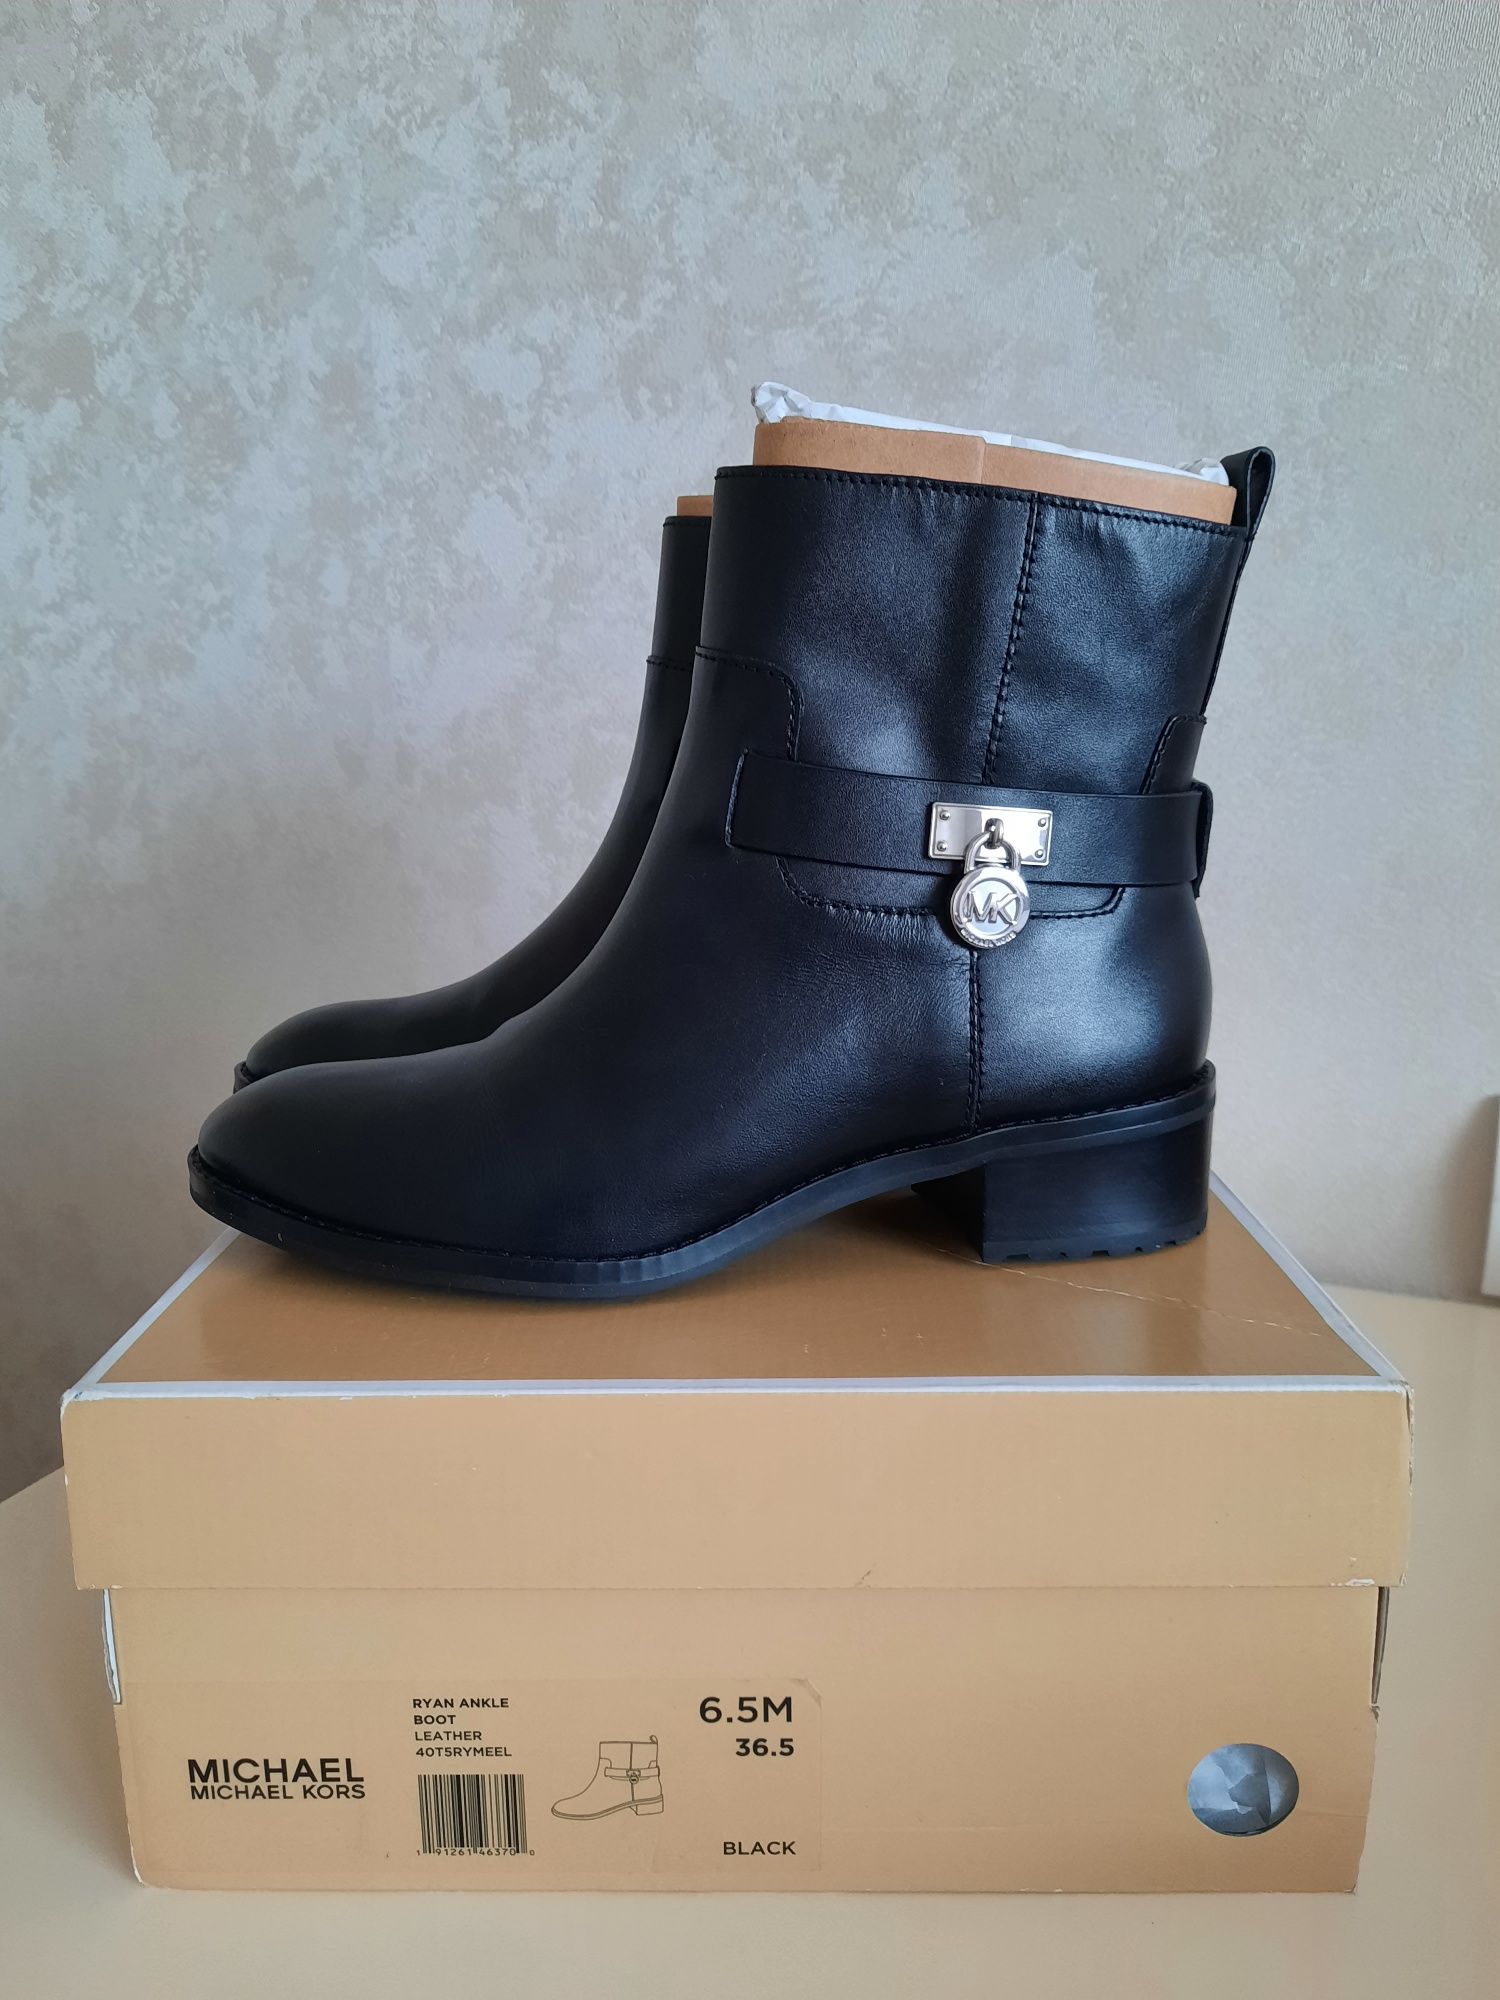 Новые кожаные ботинки Michael Kors оригинал 36.5 размер